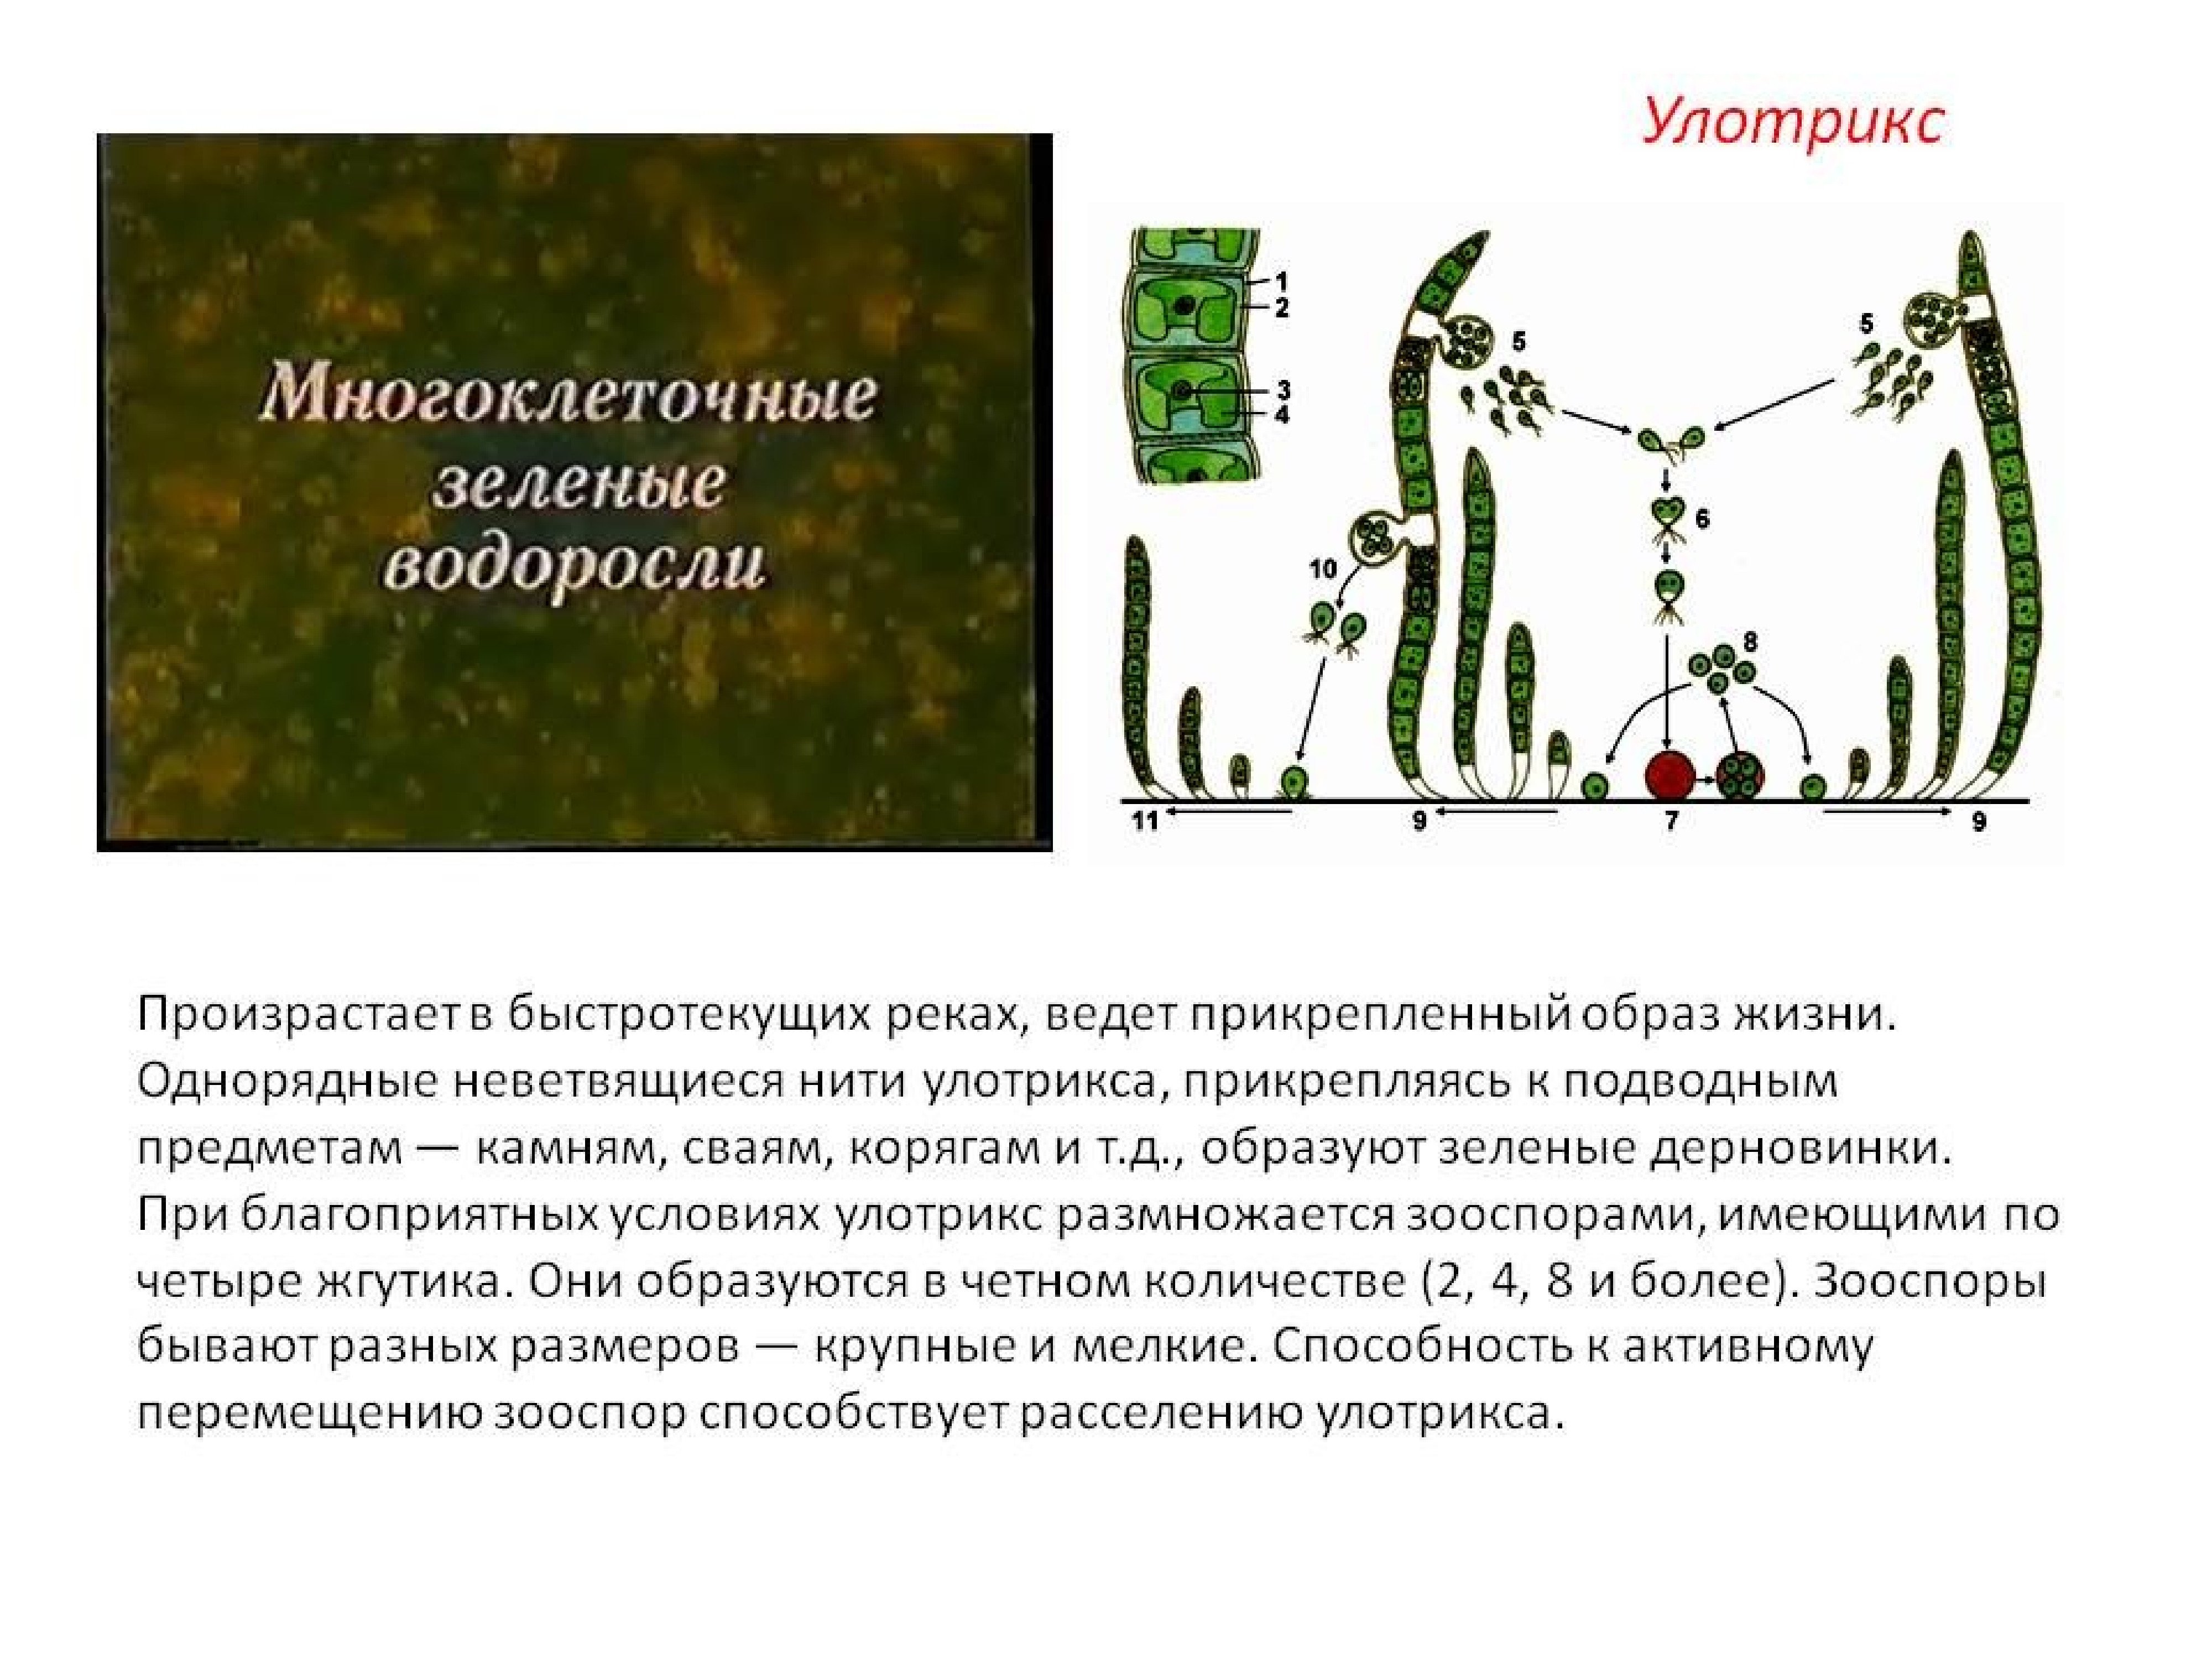 Прикрепленный образ жизни биология 5 класс. Многоклеточные водоросли улотрикс. Ламинария и улотрикс. Зеленые водоросли улотрикс. Нити водоросли улотрикса.